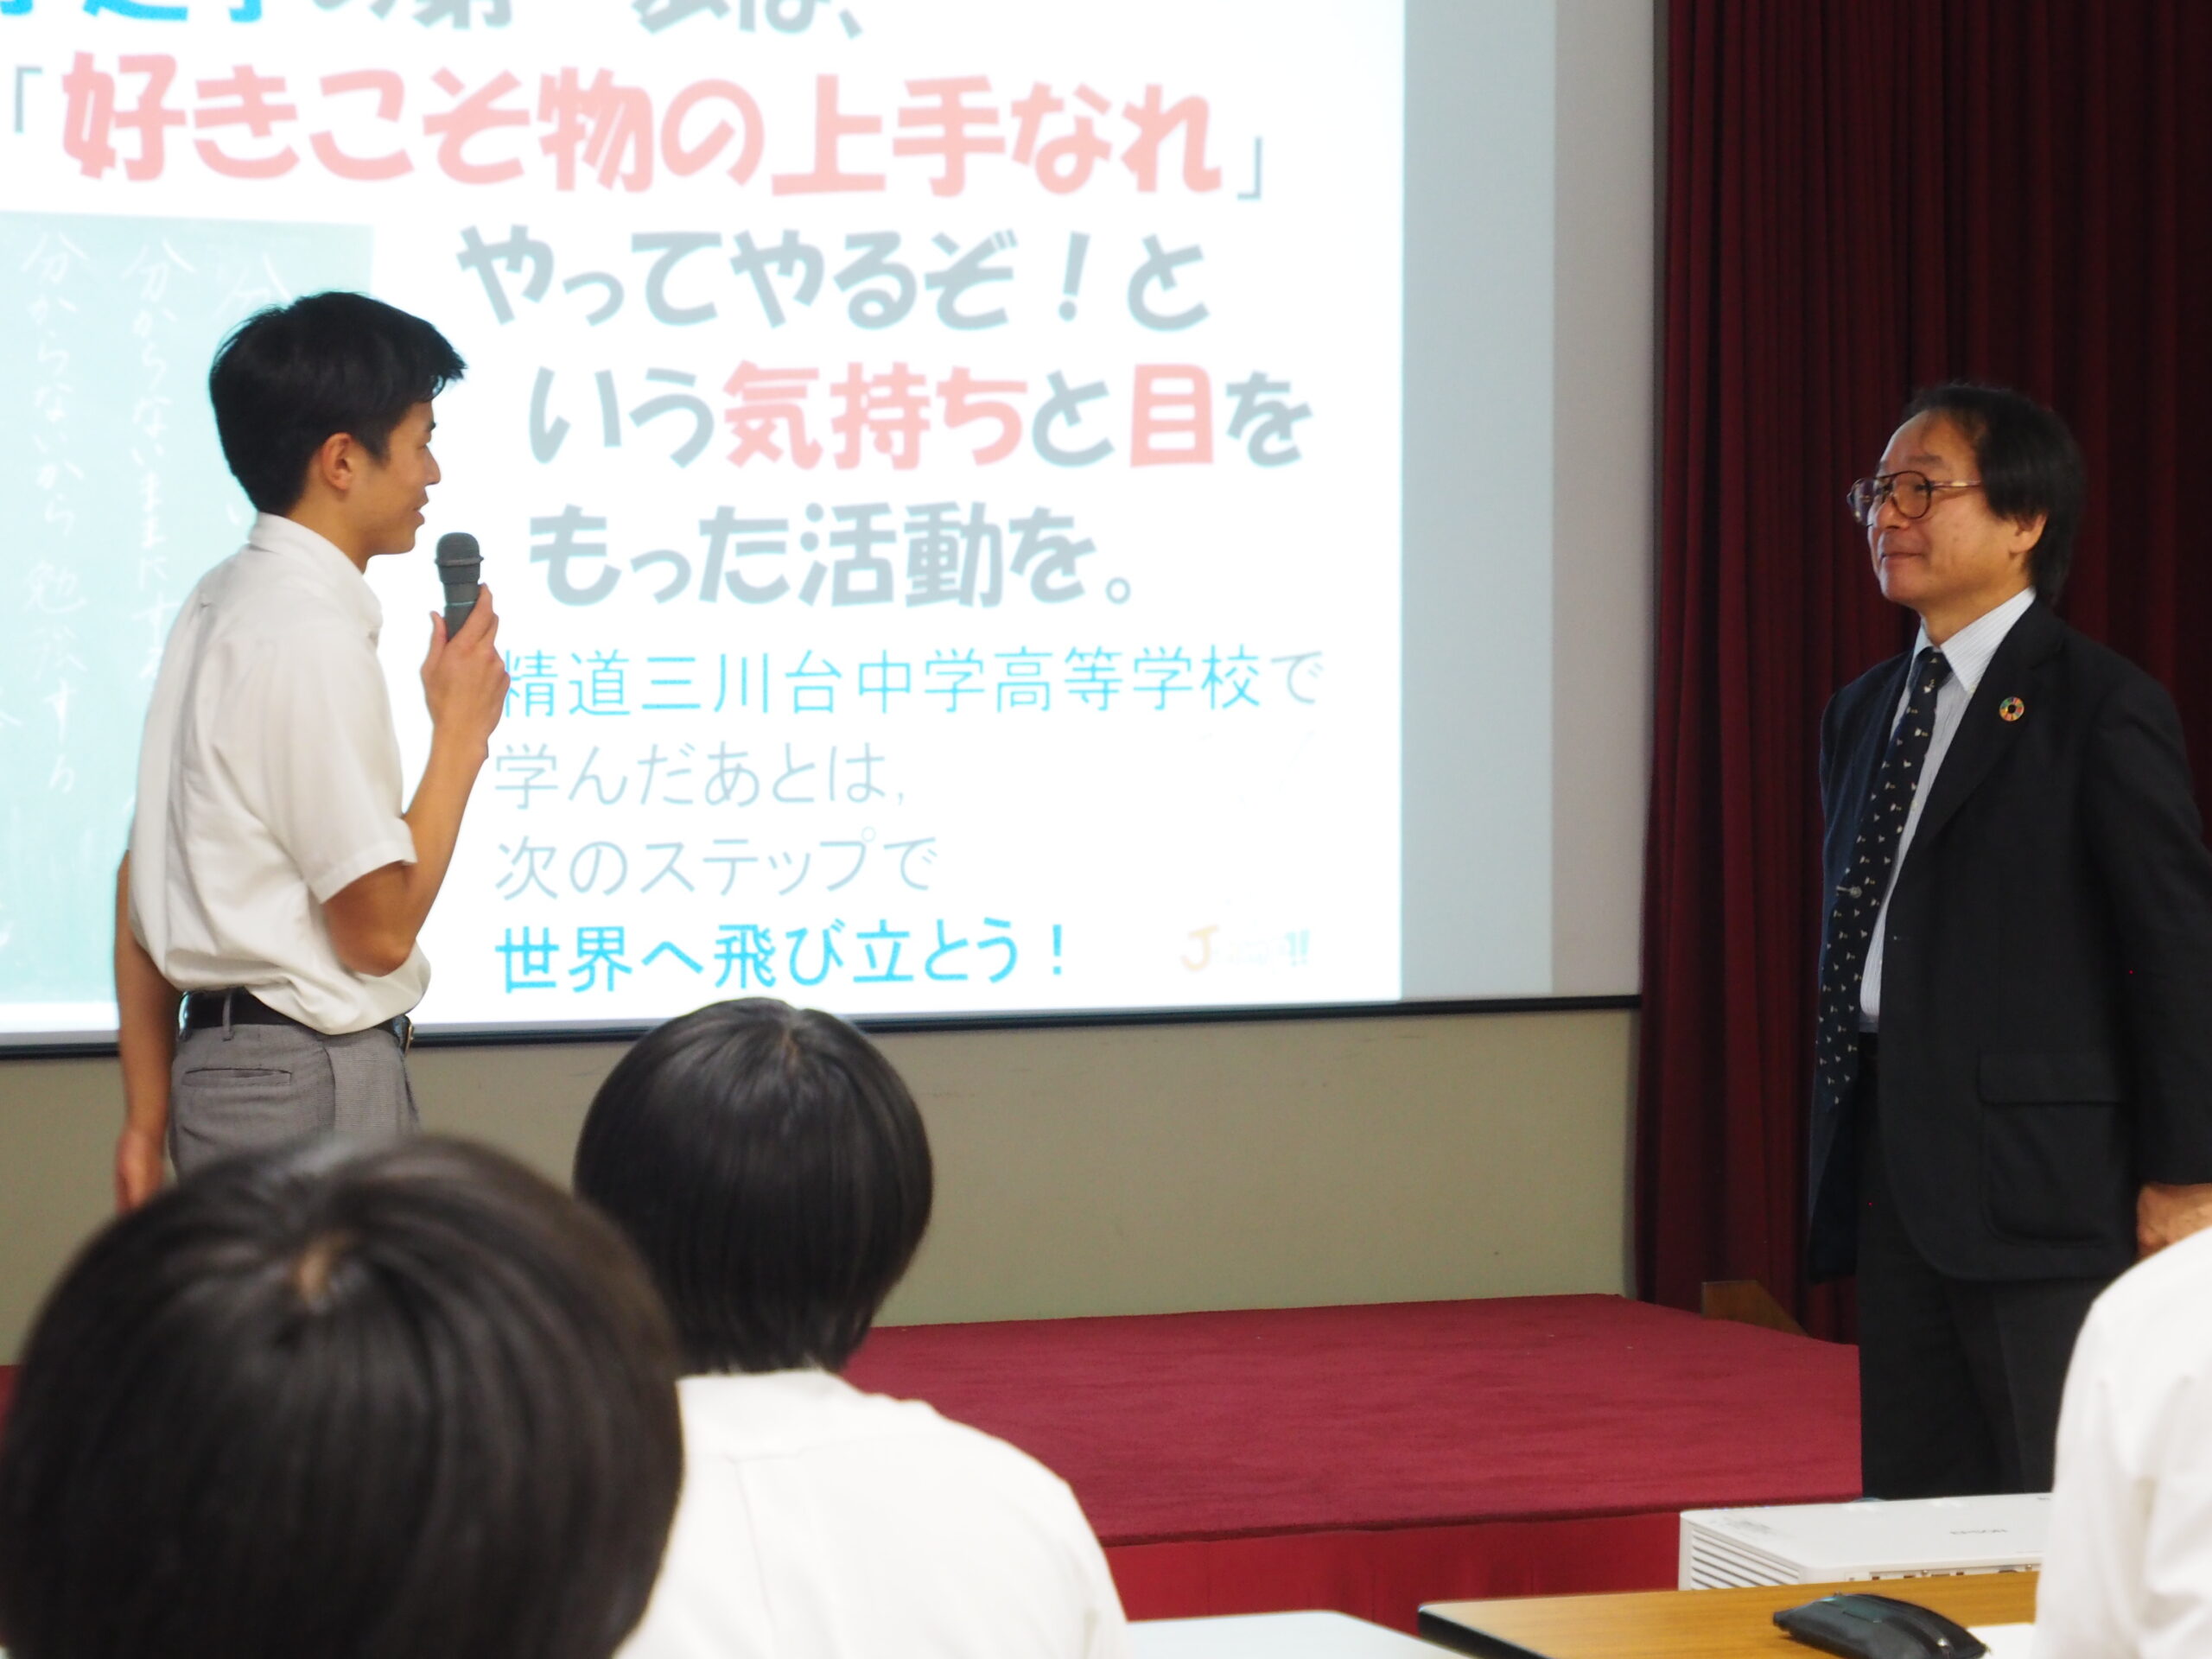 広島大学 西堀先生に来ていただき進路講演会を行いました。